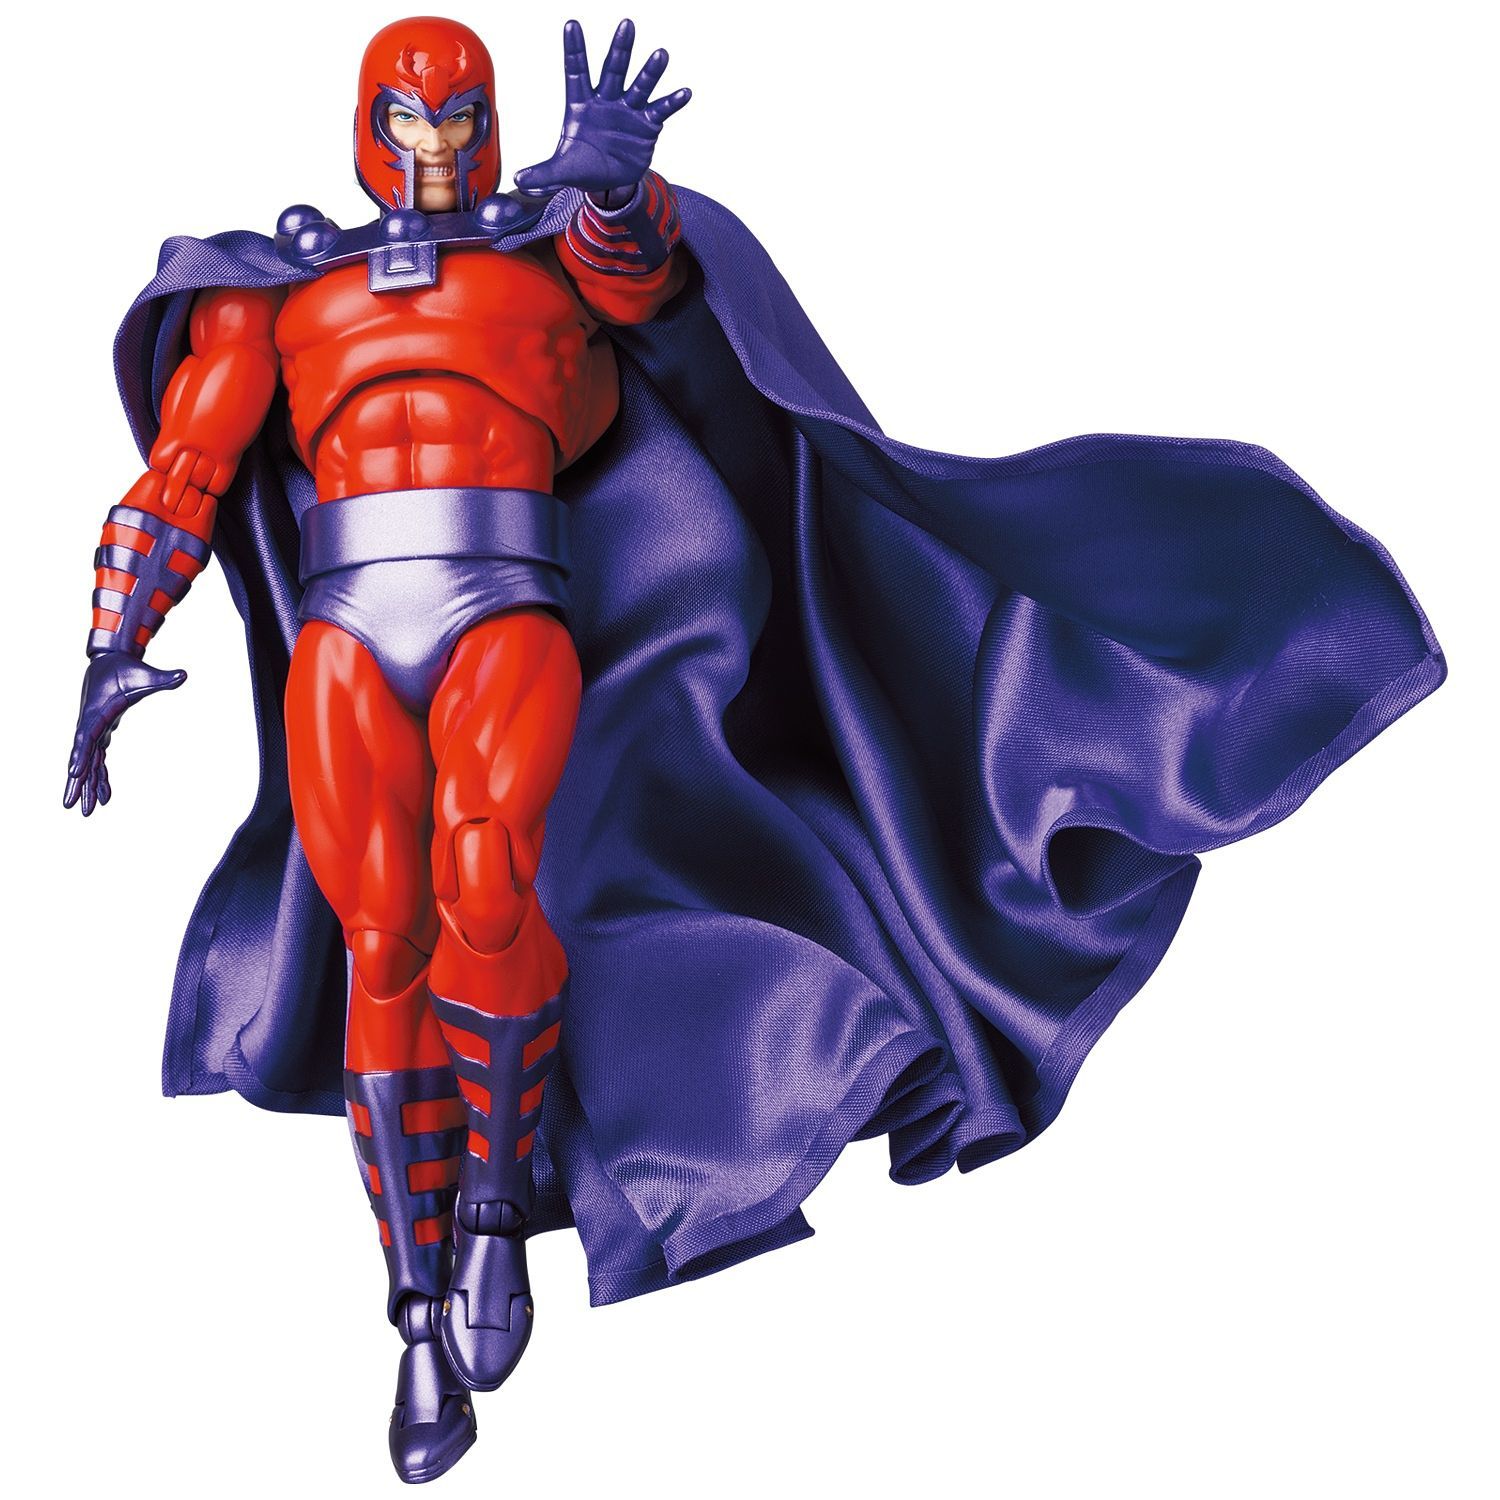 Medicom - MAFEX No. 179 - X-Men - Magneto (Original Comic Ver.) - Marvelous Toys